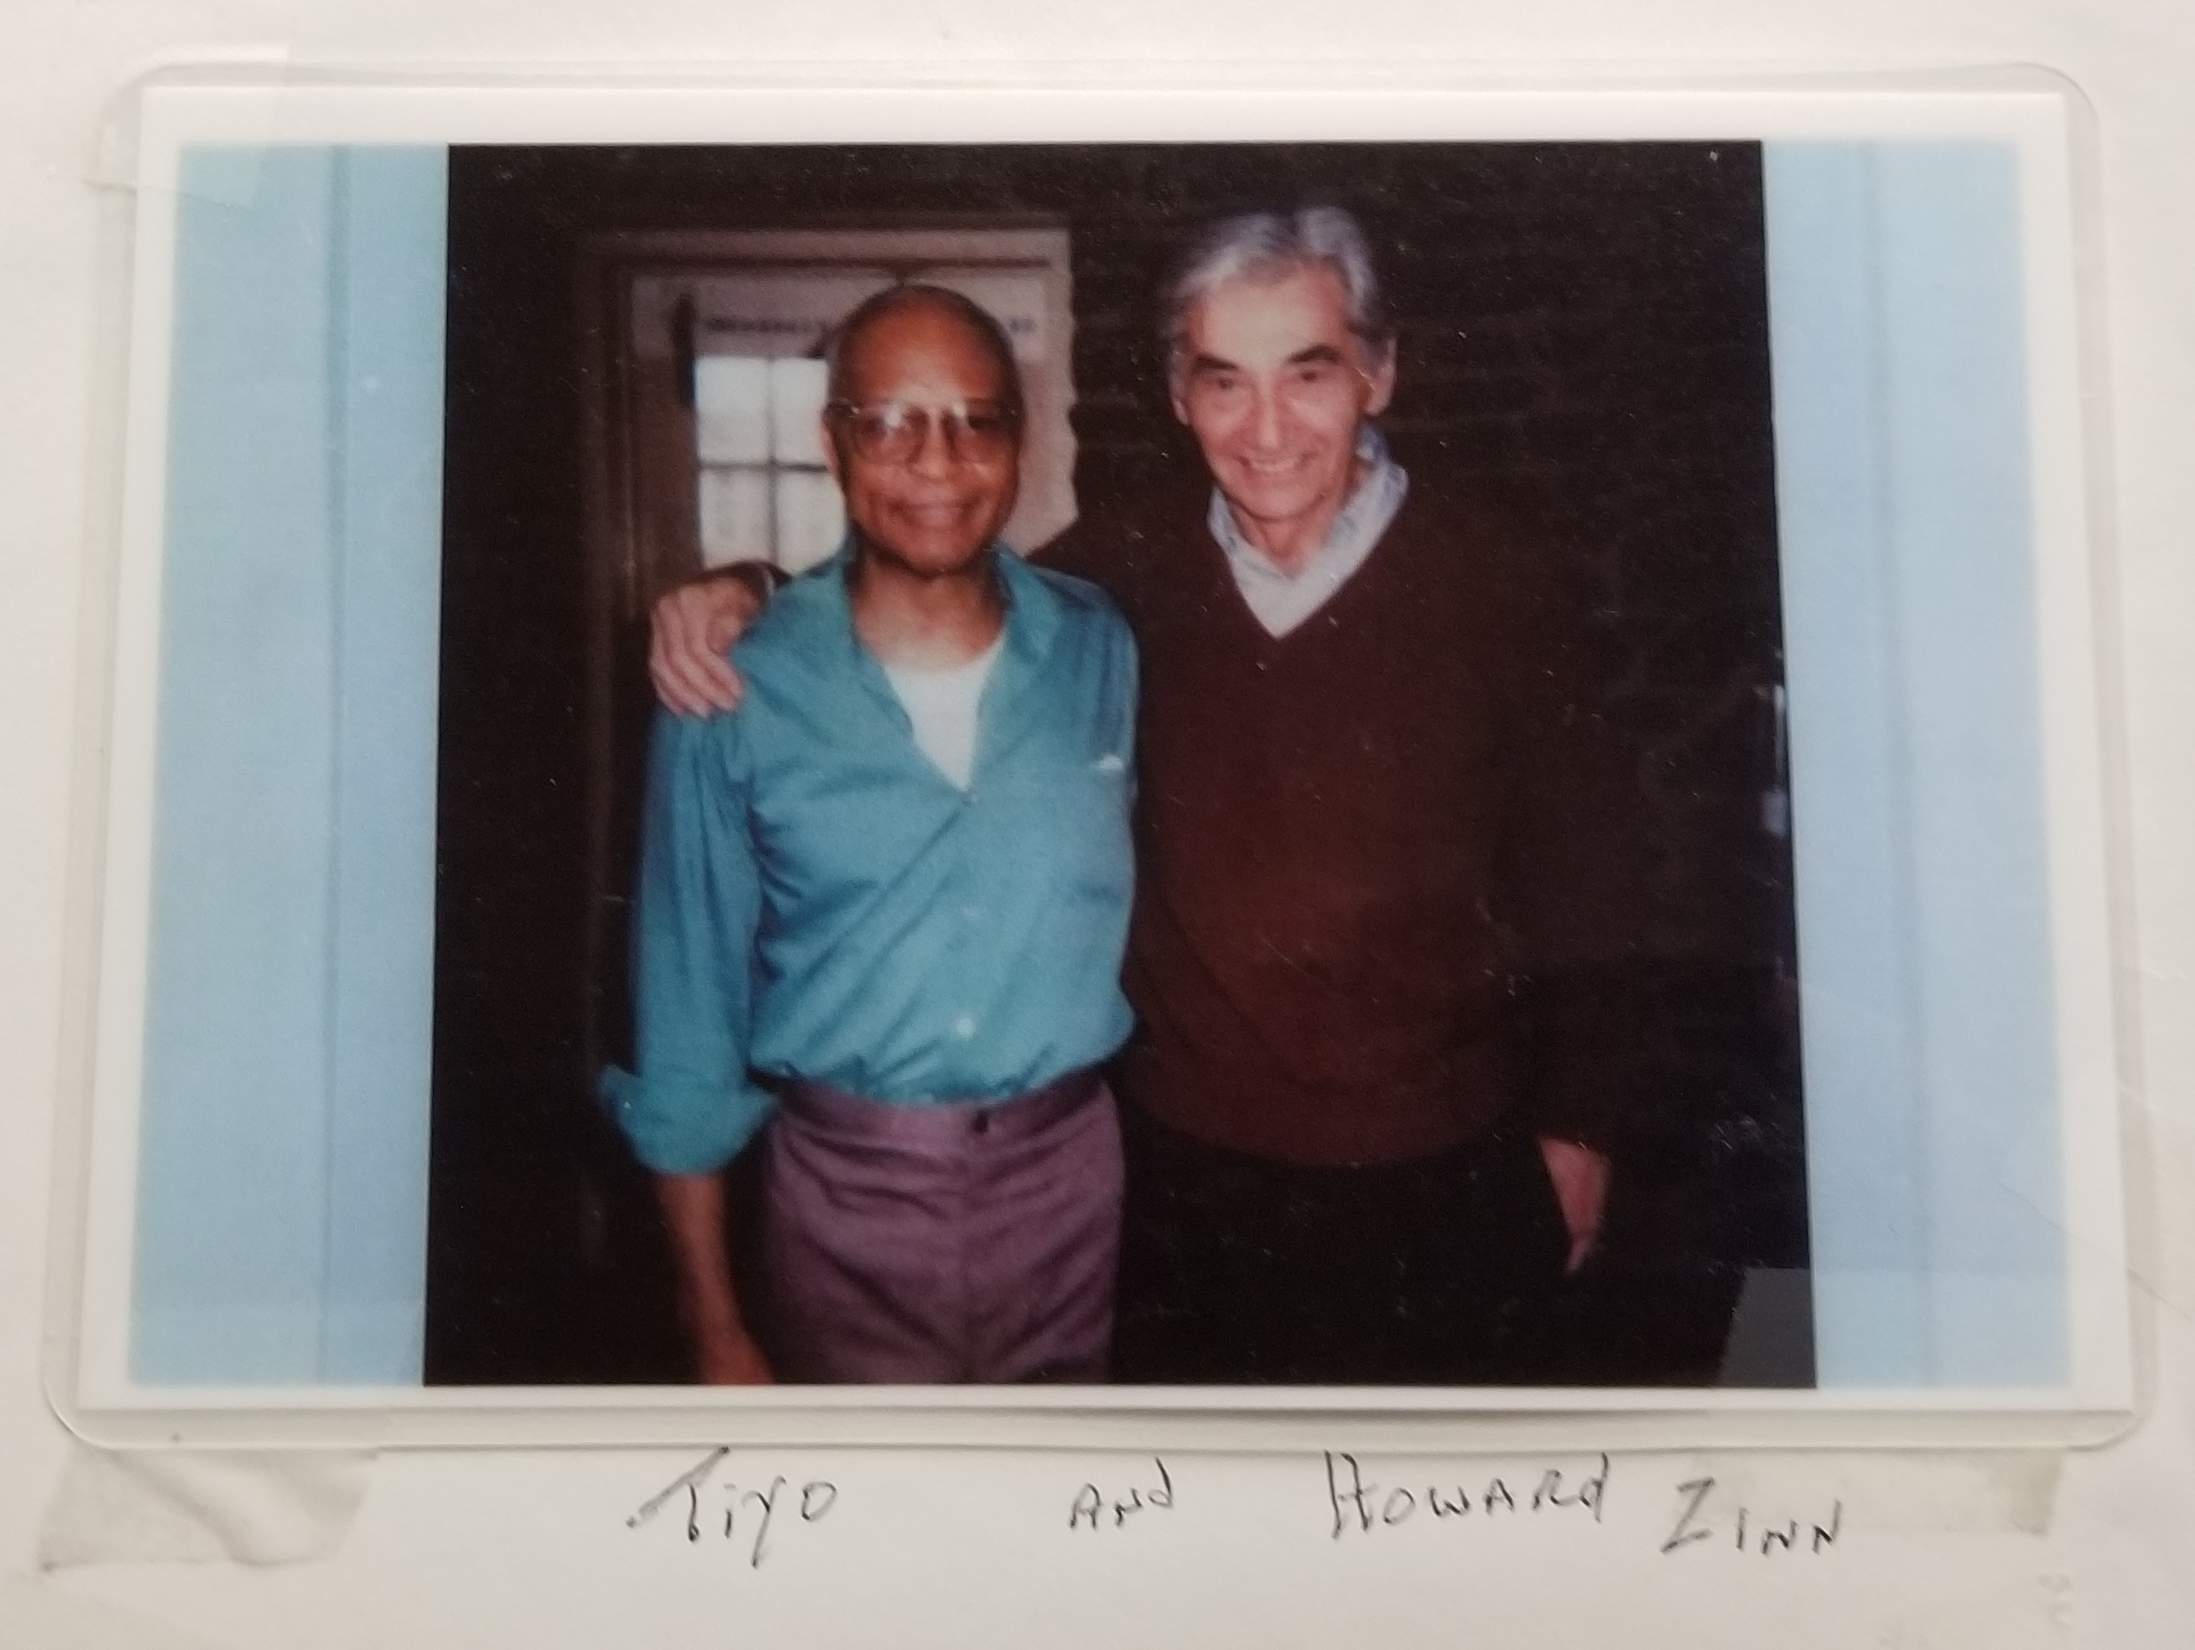 Tiyo Attallah Salah-El and Howard Zinn (undated) | HowardZinn.org